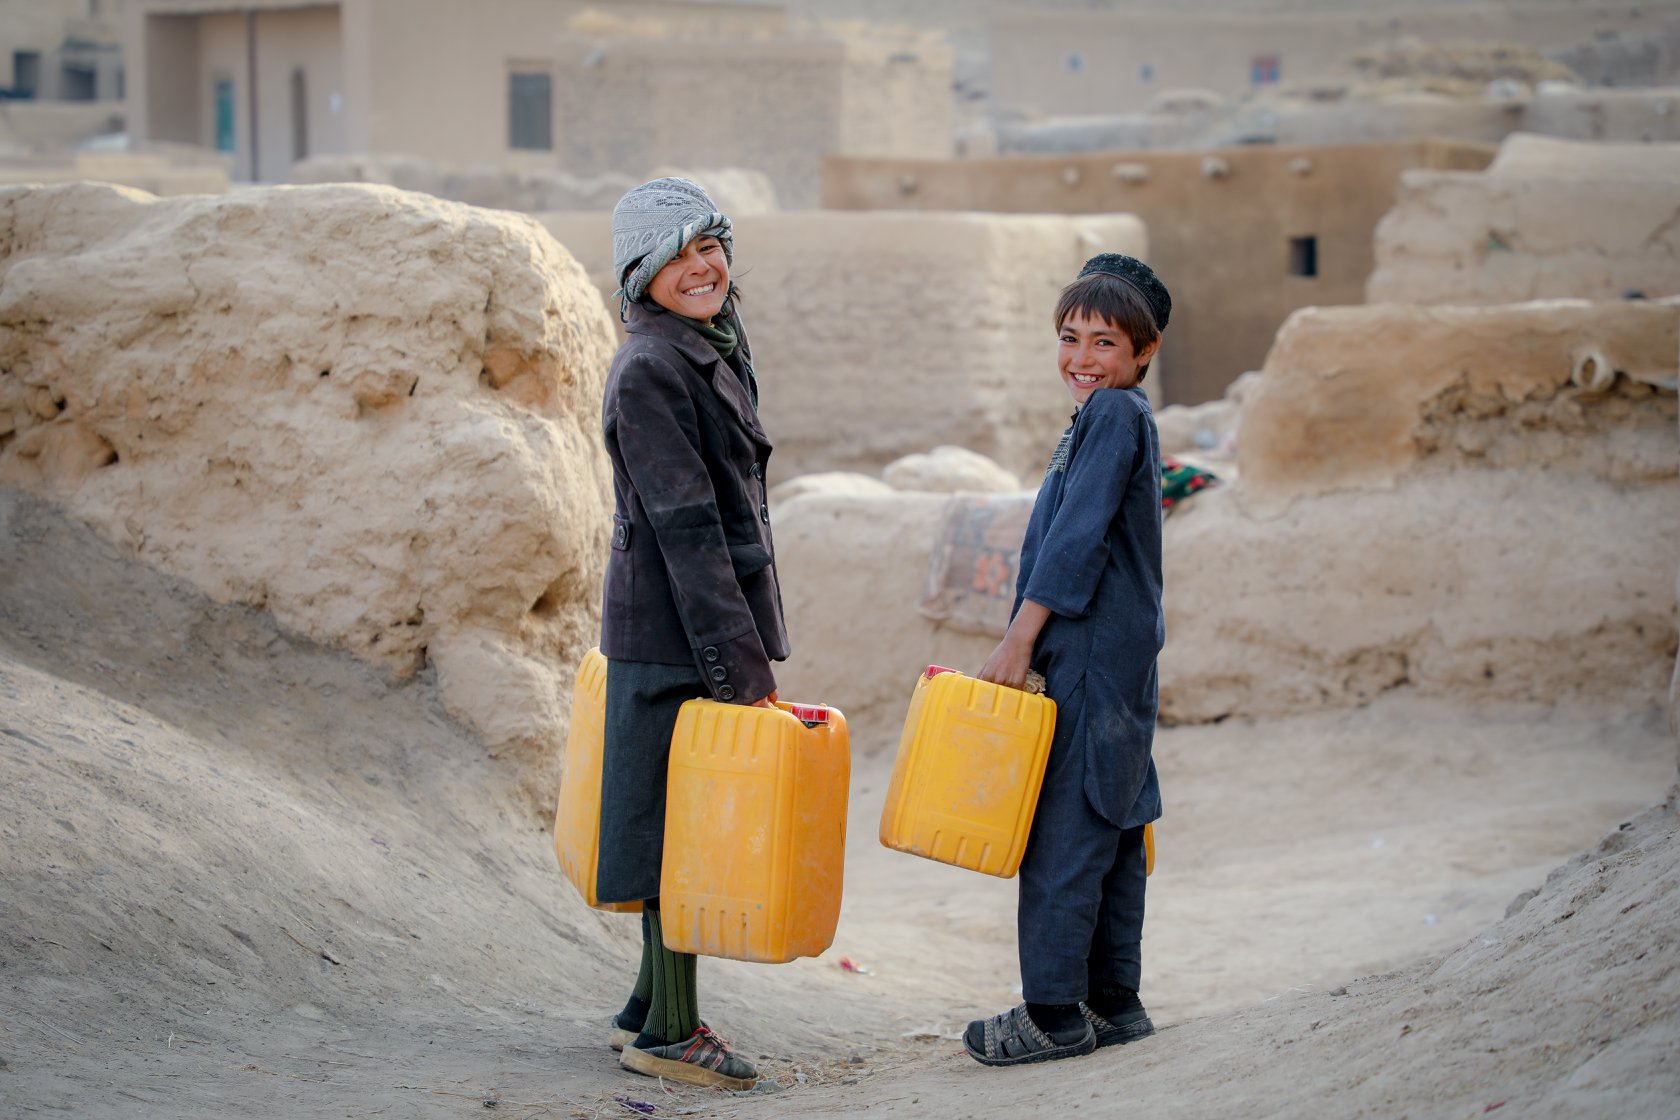 Kinder in Afghanistan haben durch World Vision sauberes Wasser